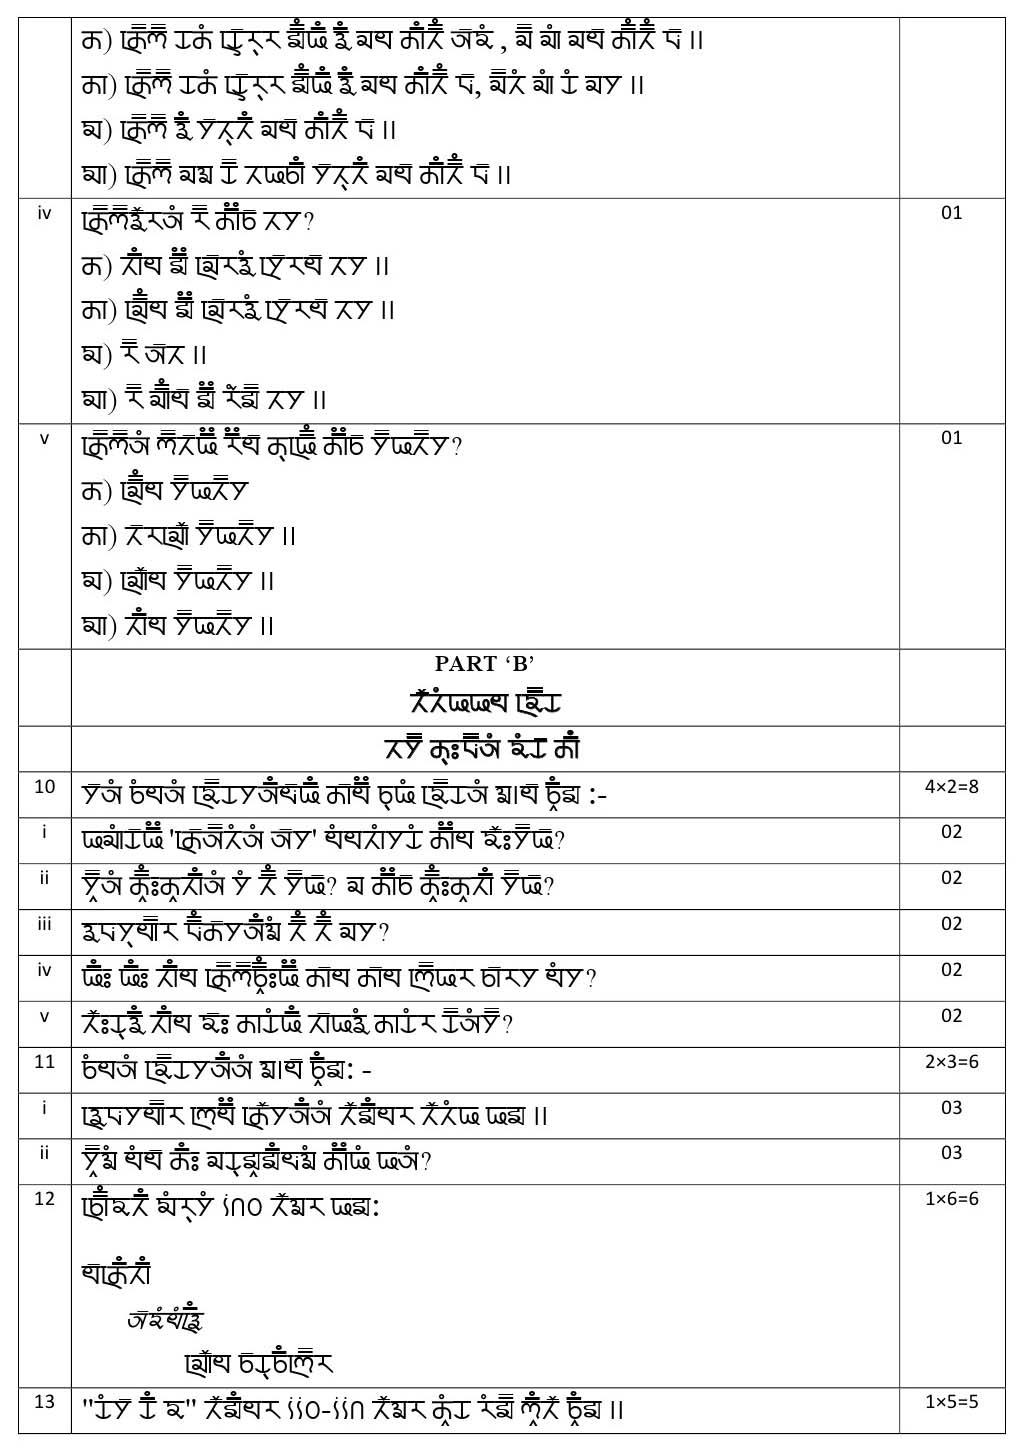 Gurung CBSE Class X Sample Question Paper 2020 21 - Image 13